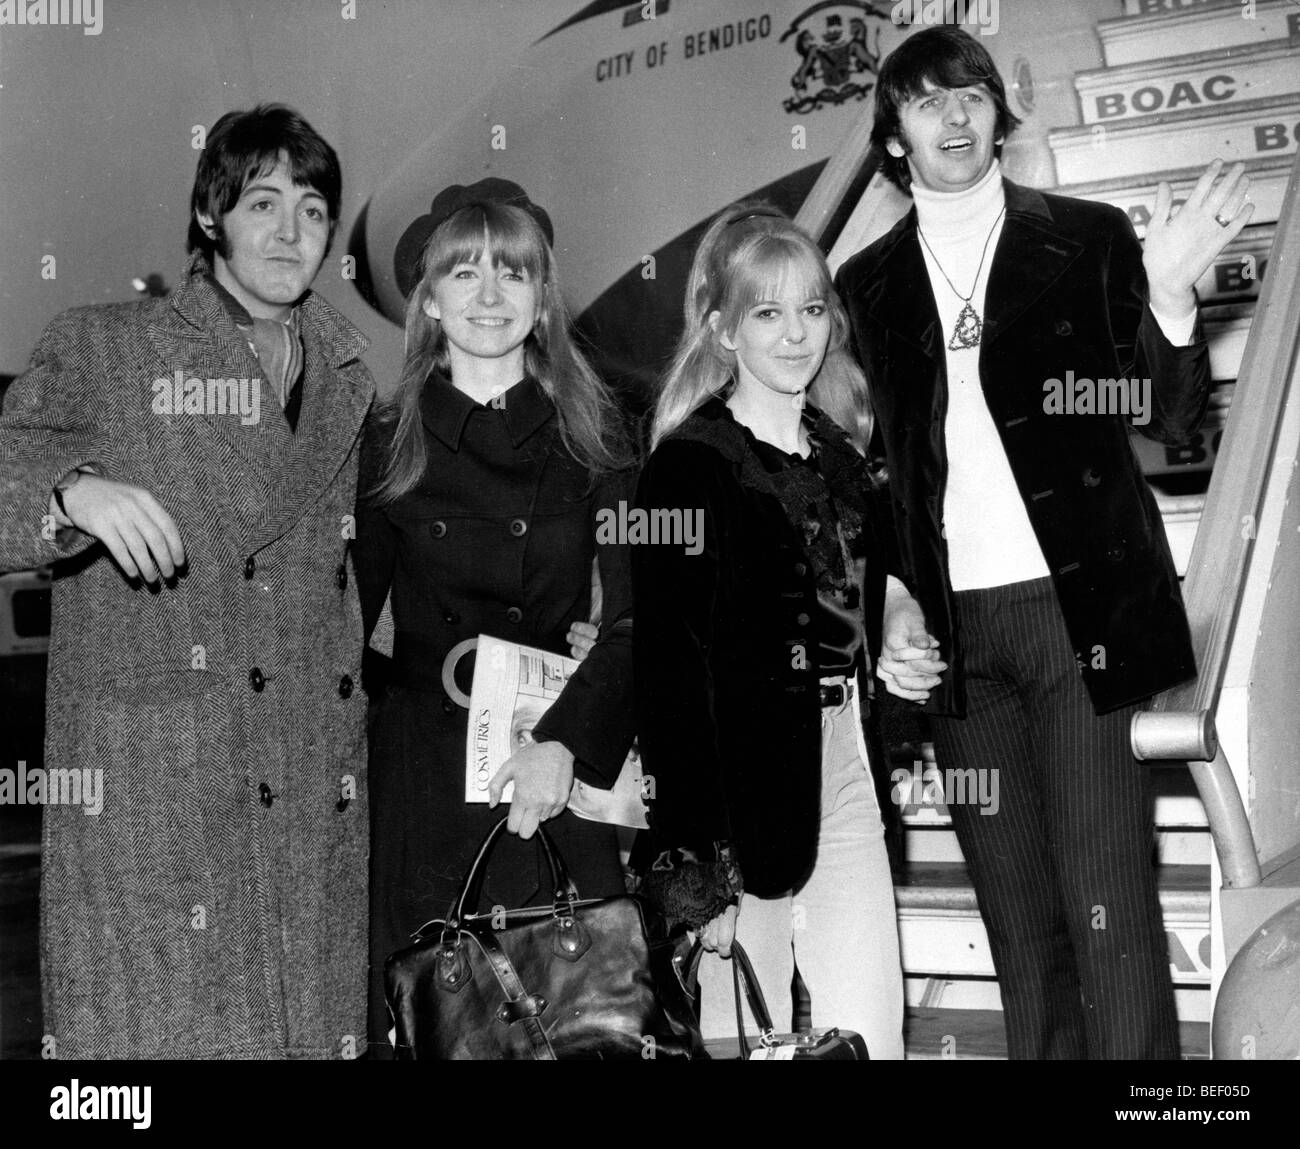 Il Beatles' Paul McCartney, sinistra e Ringo Starr, destra, a bordo di un volo BOAC. Foto Stock